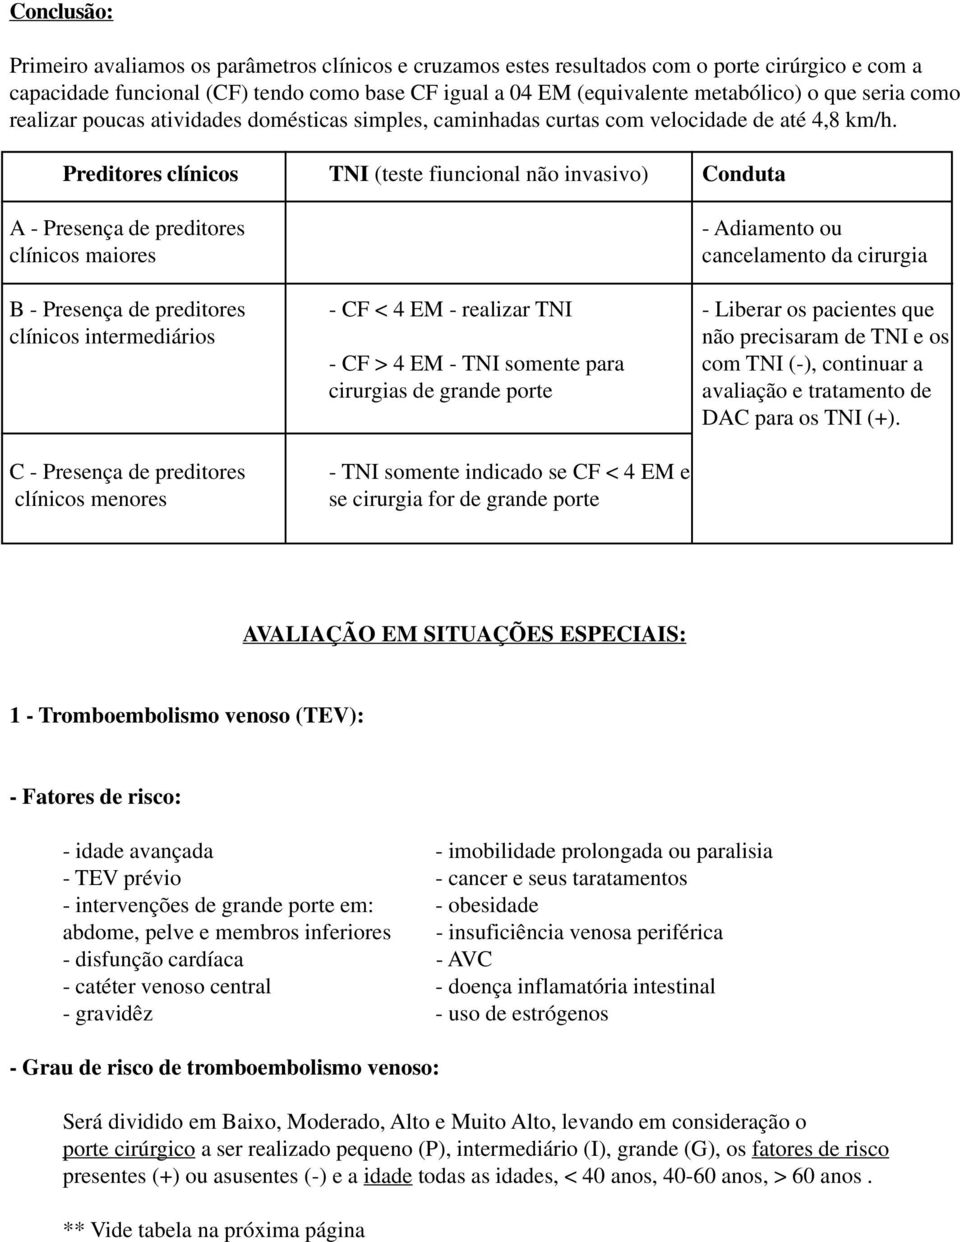 Preditores clínicos TNI (teste fiuncional não invasivo) Conduta A - Presença de preditores clínicos maiores - Adiamento ou cancelamento da cirurgia B - Presença de preditores - CF < 4 EM - realizar